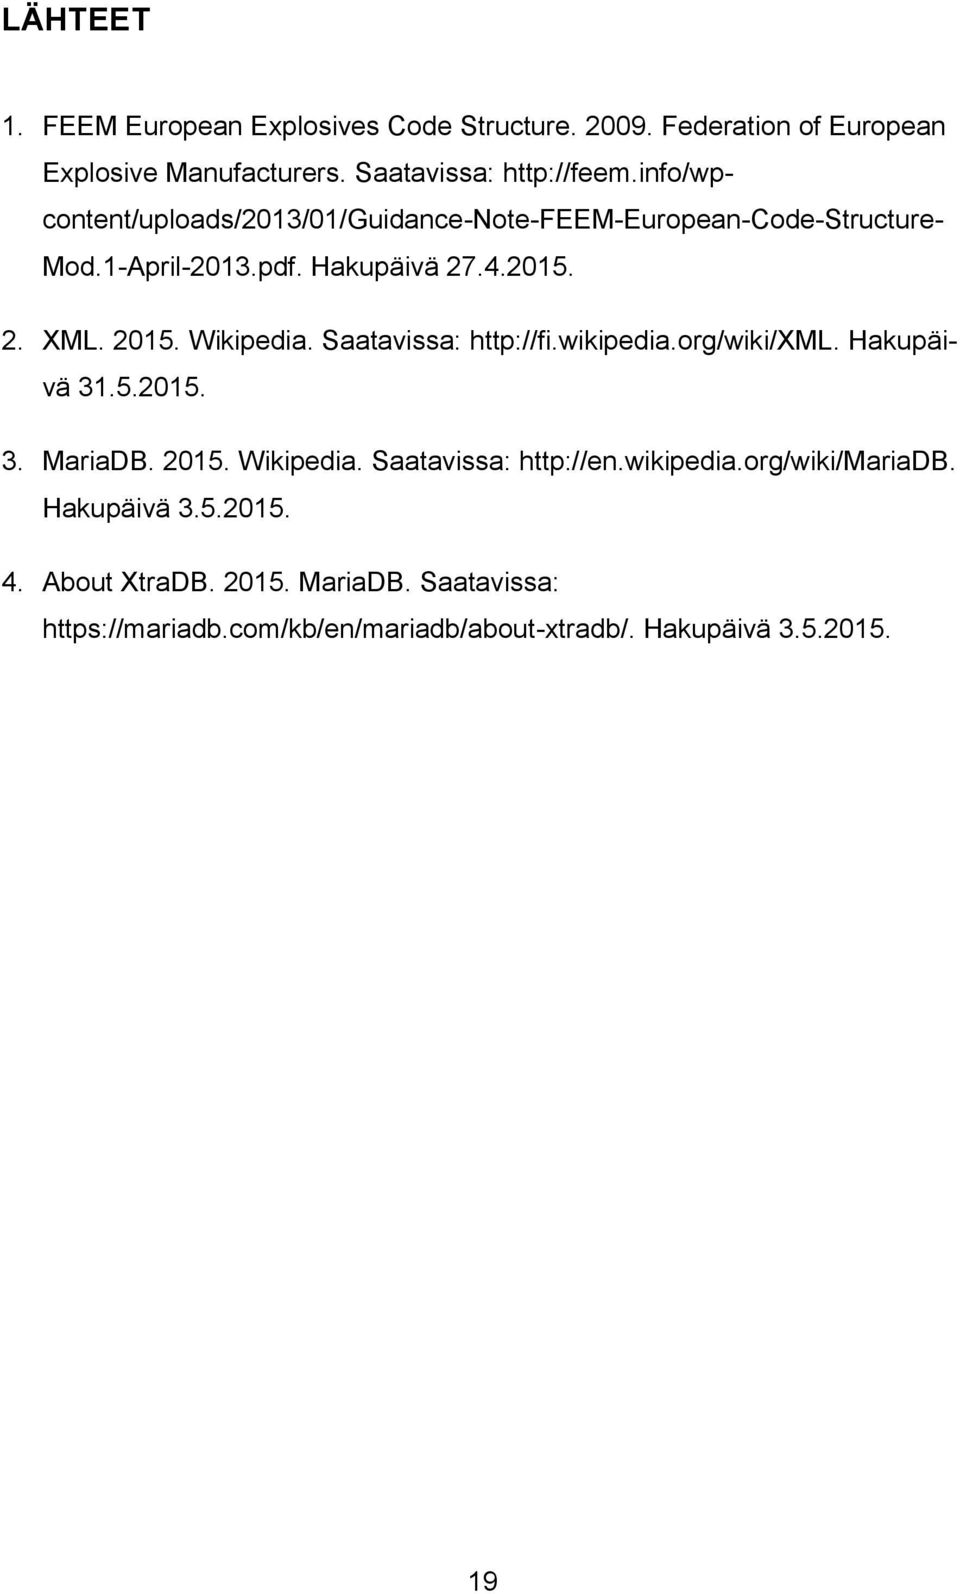 Wikipedia. Saatavissa: http://fi.wikipedia.org/wiki/xml. Hakupäivä 31.5.2015. 3. MariaDB. 2015. Wikipedia. Saatavissa: http://en.wikipedia.org/wiki/mariadb.